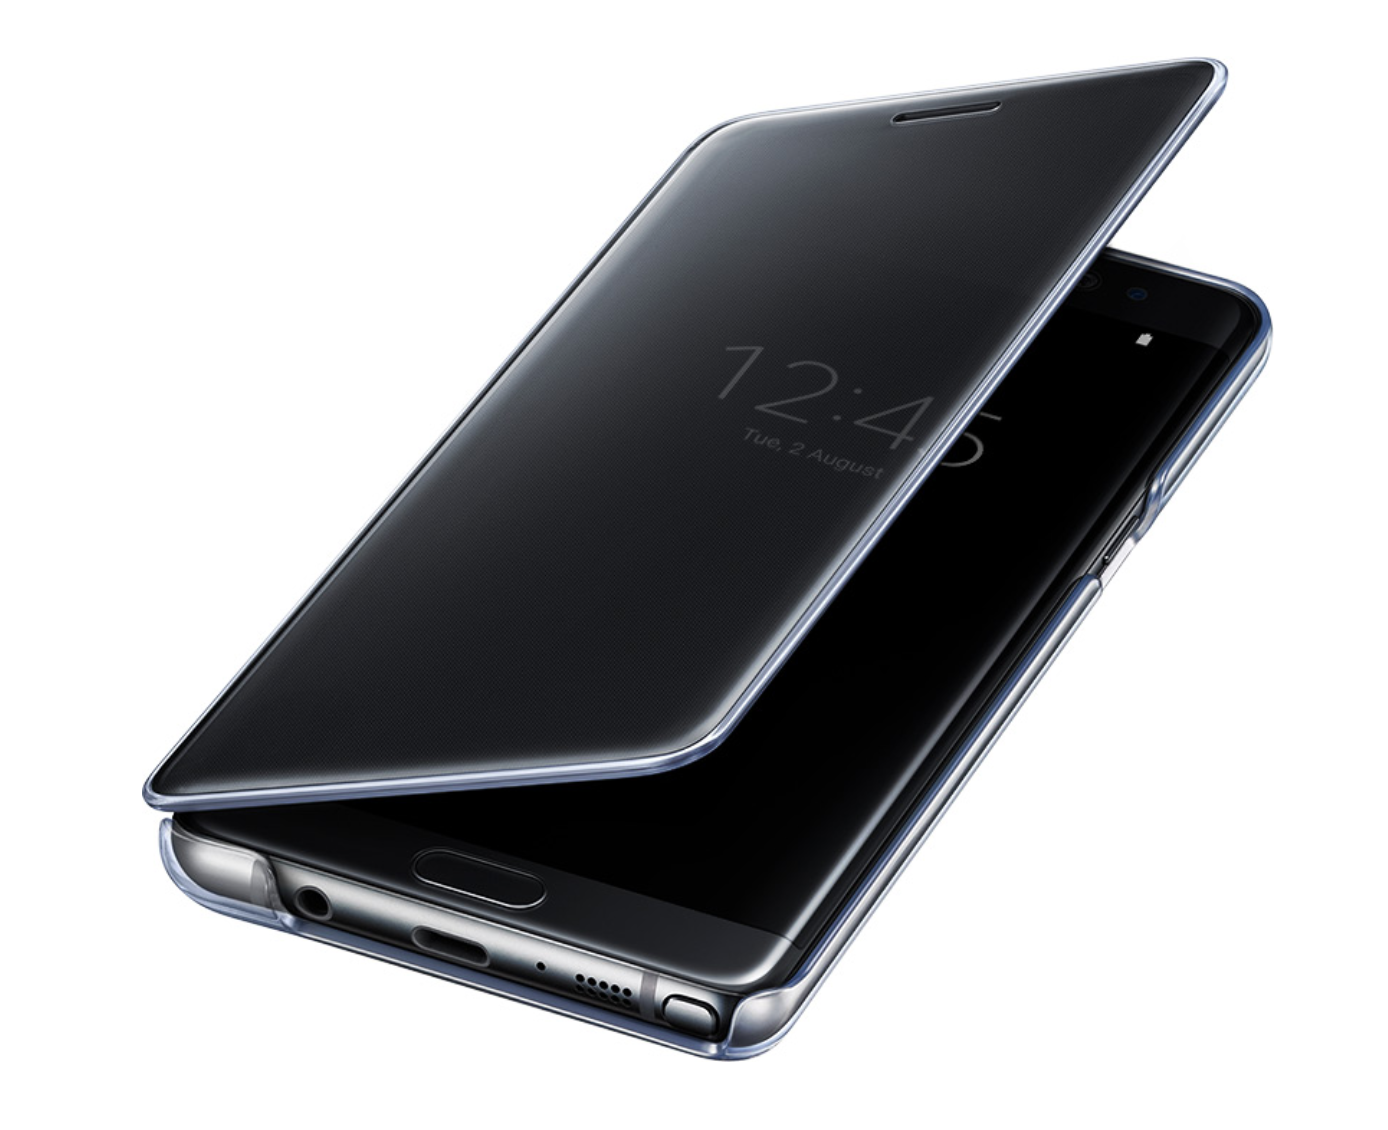 Bao Da Samsung Galaxy Note 8 Clear View Chính Hãng được hãng Samsung sản xuất và thiết kế nhằm bảo vệ chiếc điện thoại Samsung Galaxy Note 8 cao cấp tránh bụi bẩn và trấy xước trong quá trình sử dụng làm mấy đi giá trị của máy, nhằm thời ...